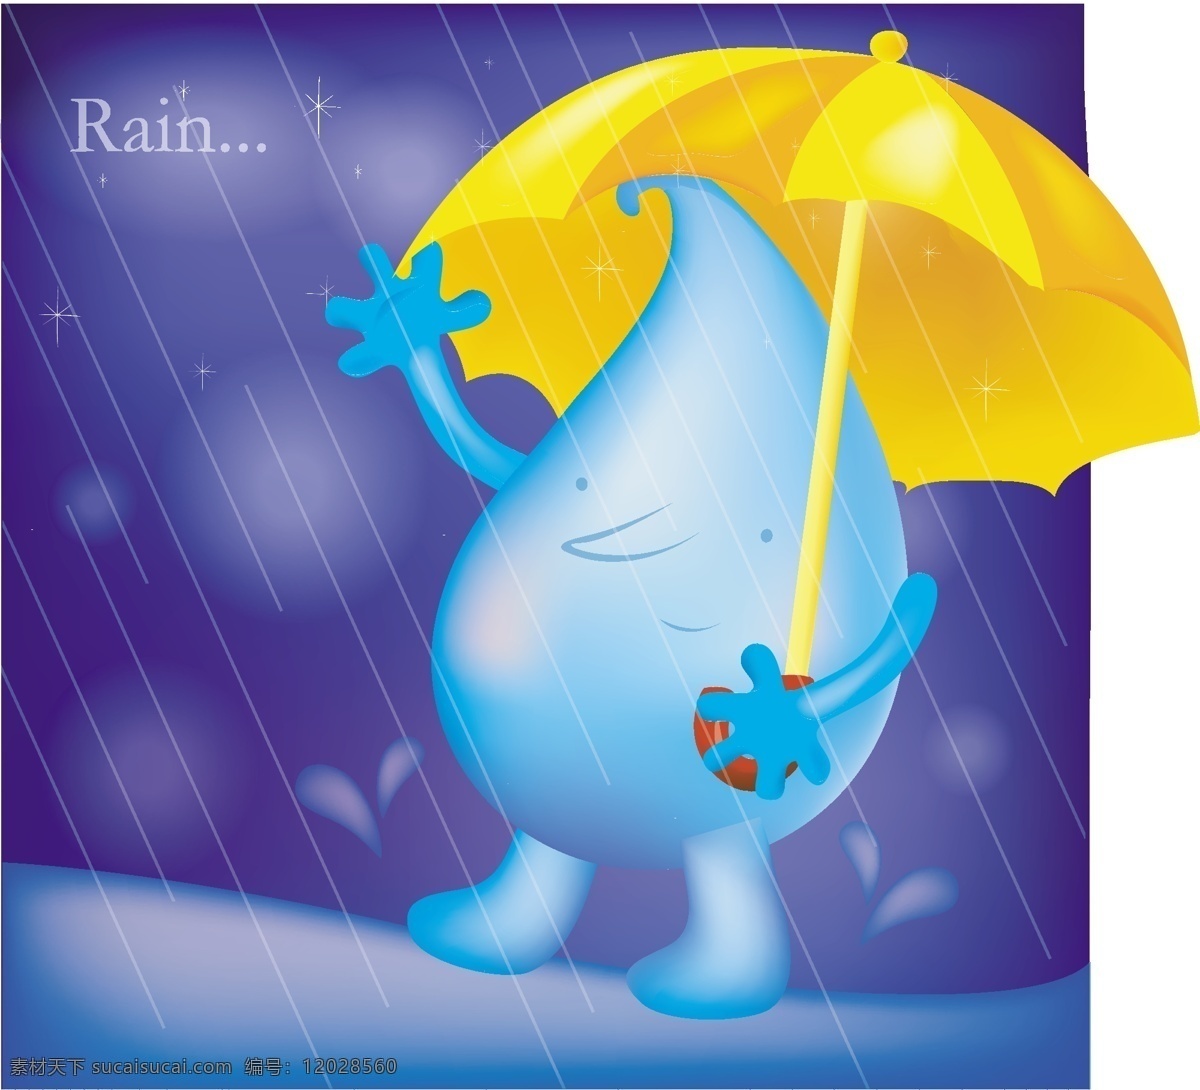 小雨 蓝色背景 其他矢量 伞 矢量素材 矢量图库 水滴 小雨矢量素材 小雨模板下载 漫画天气预报 psd源文件